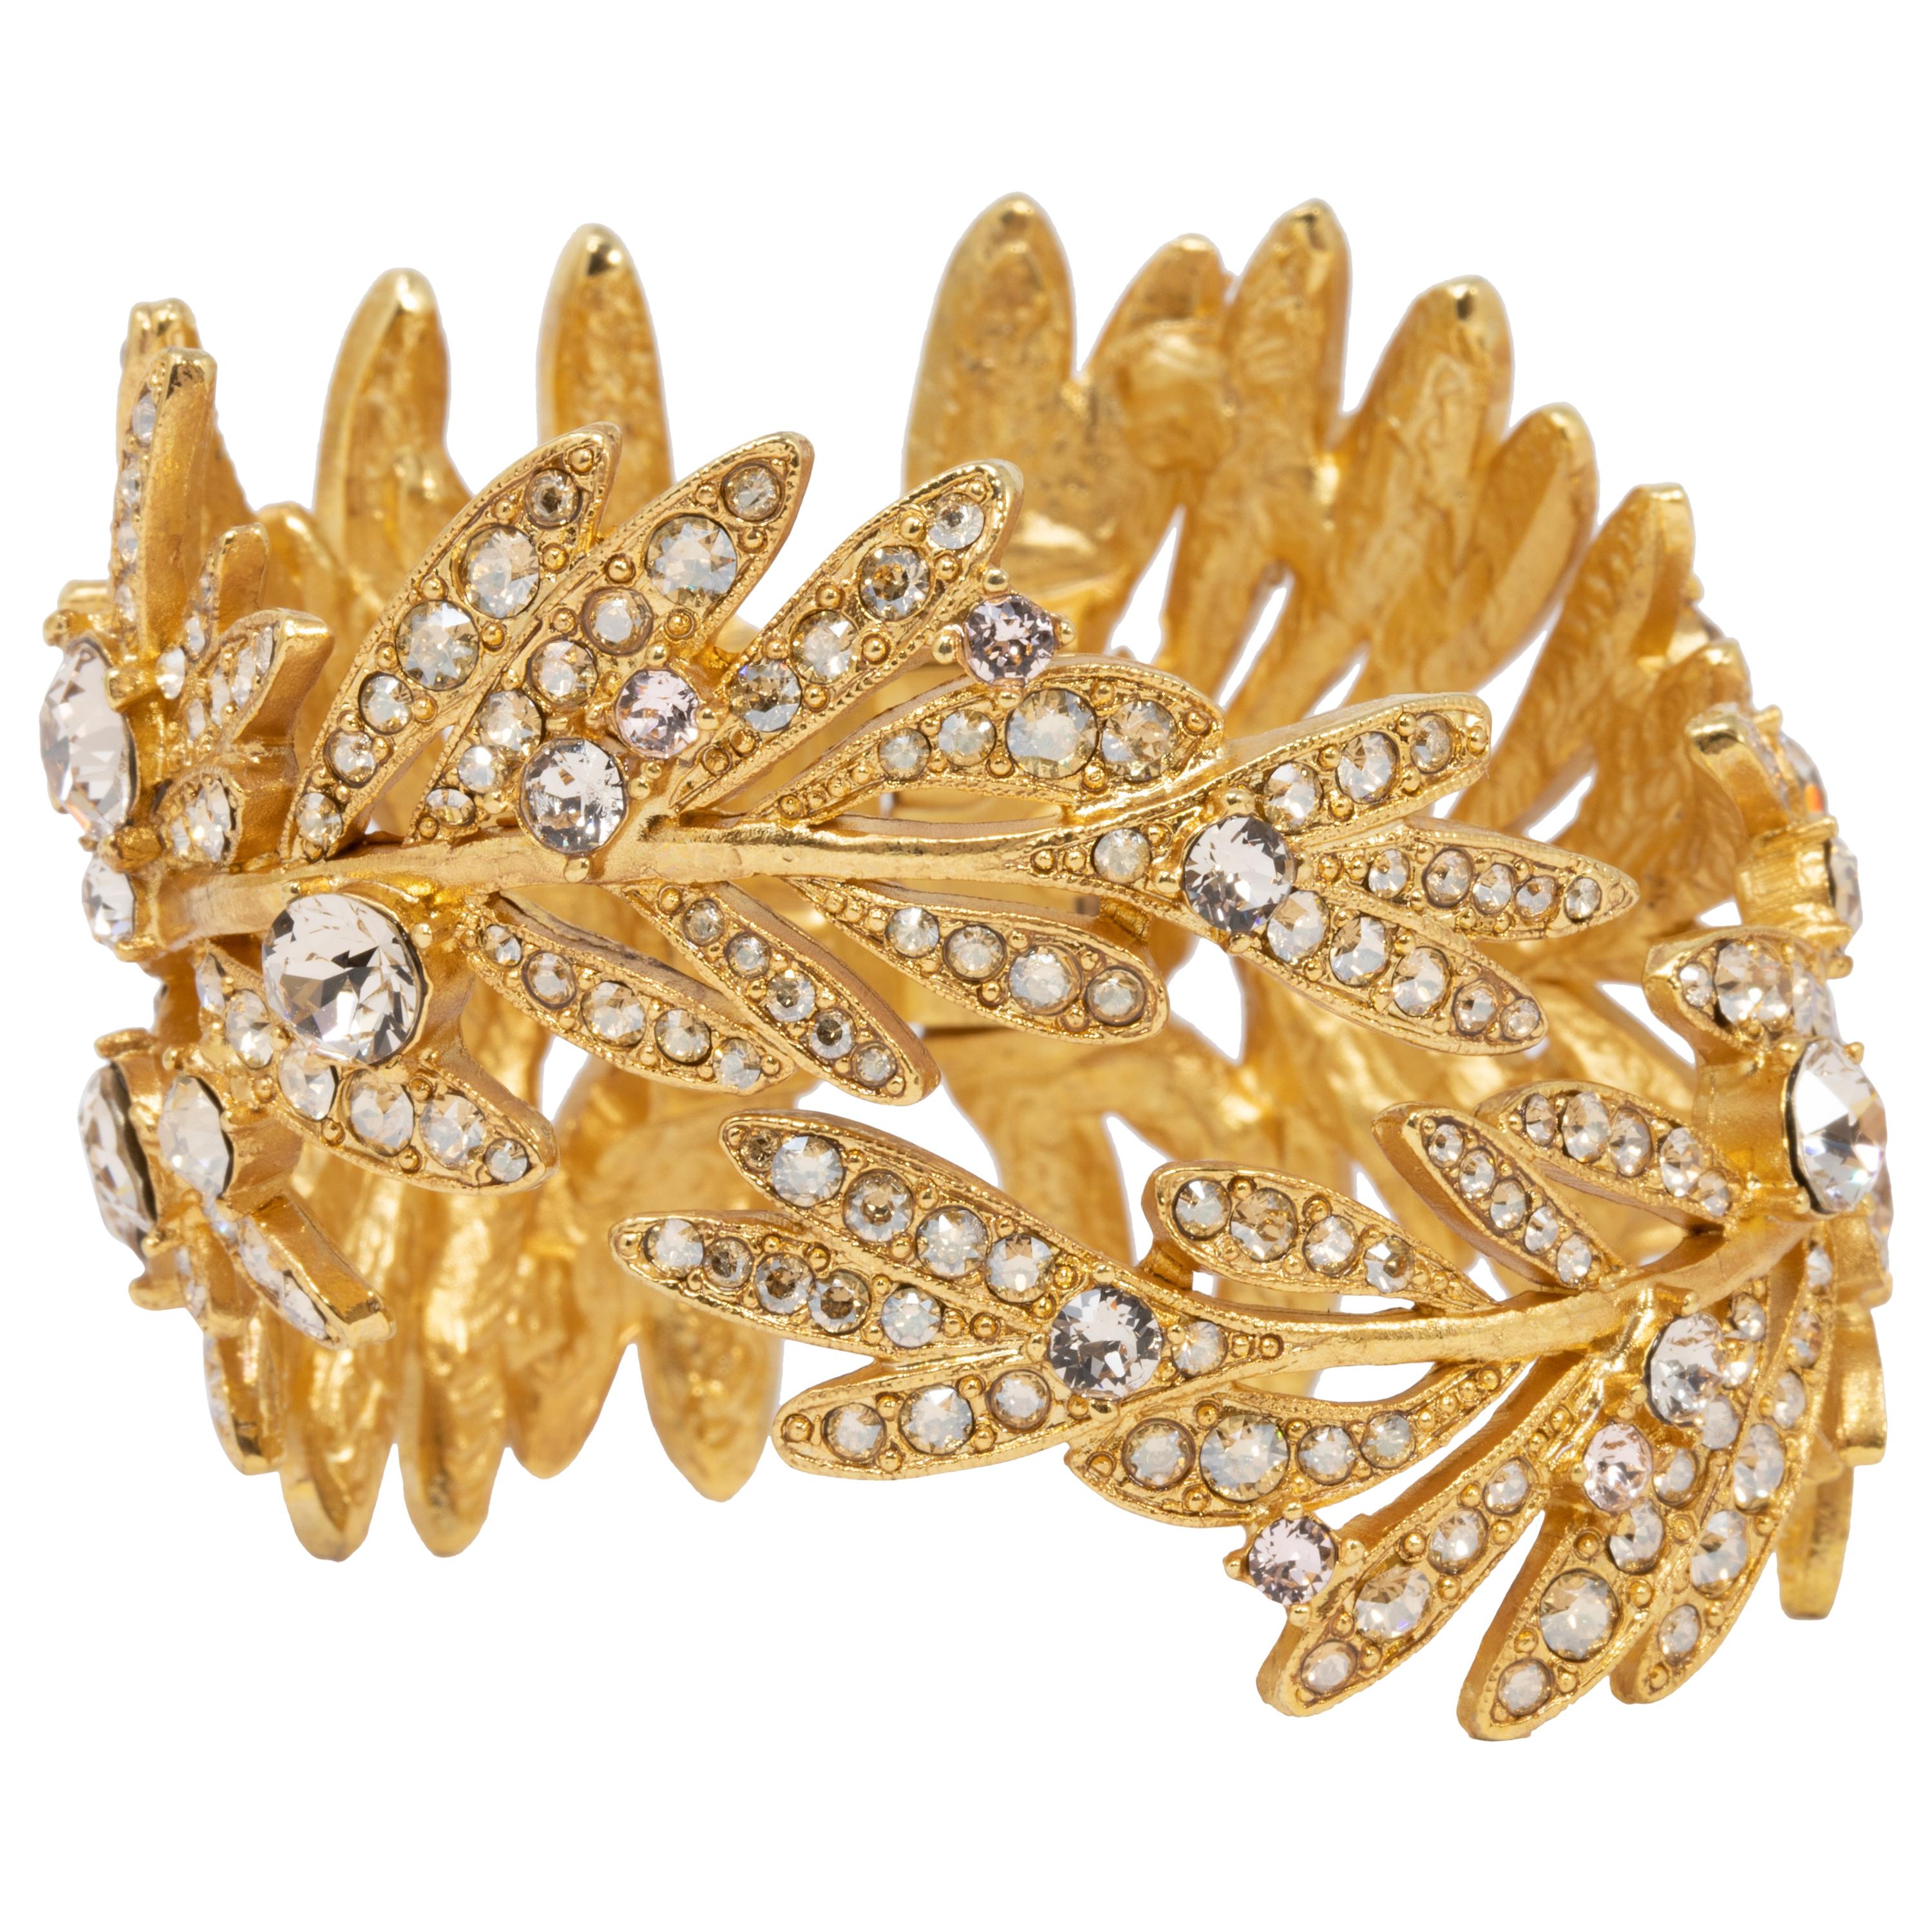 Oscar de la Renta Tropical Leaf Hinged Cuff Bracelet, Clear Crystals, in Gold